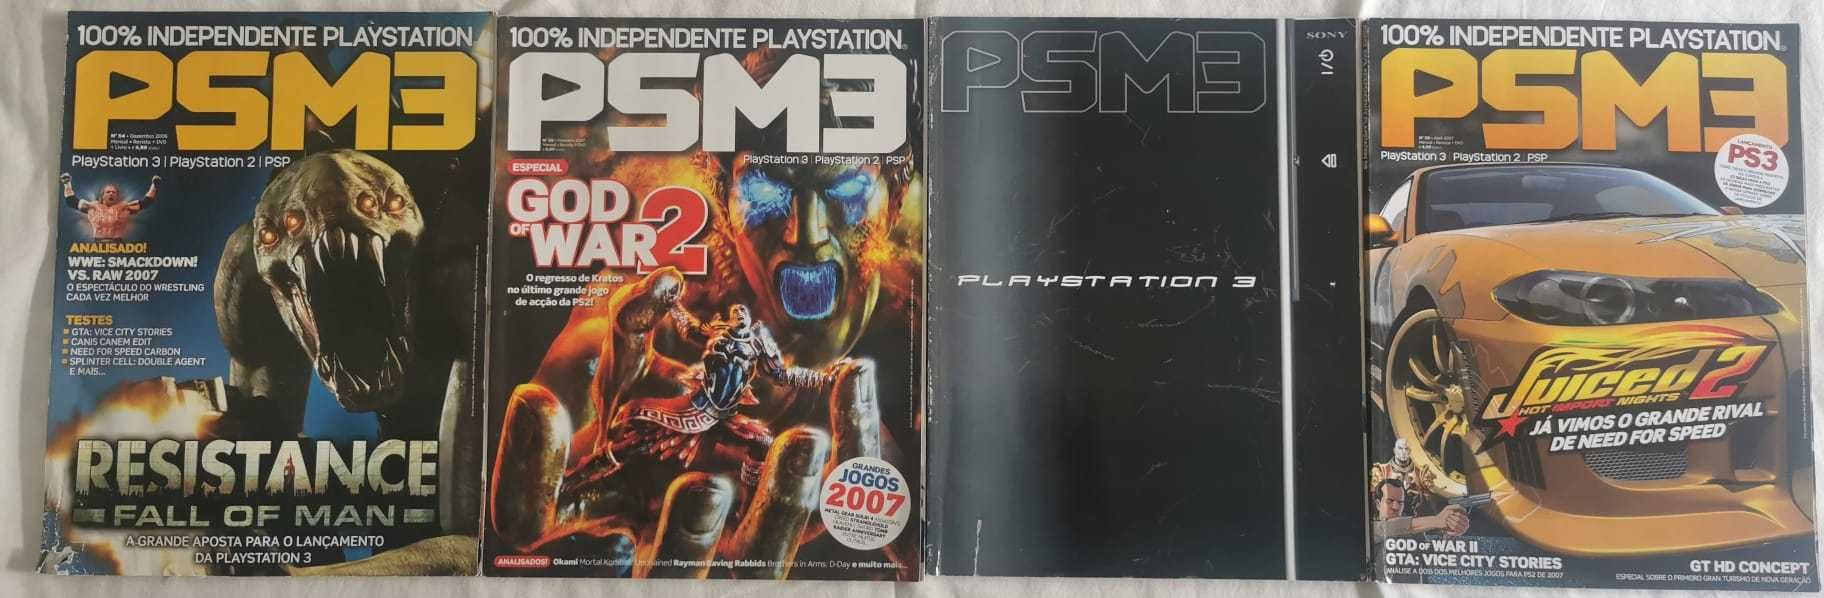 Revistas PSM2 e PSM3